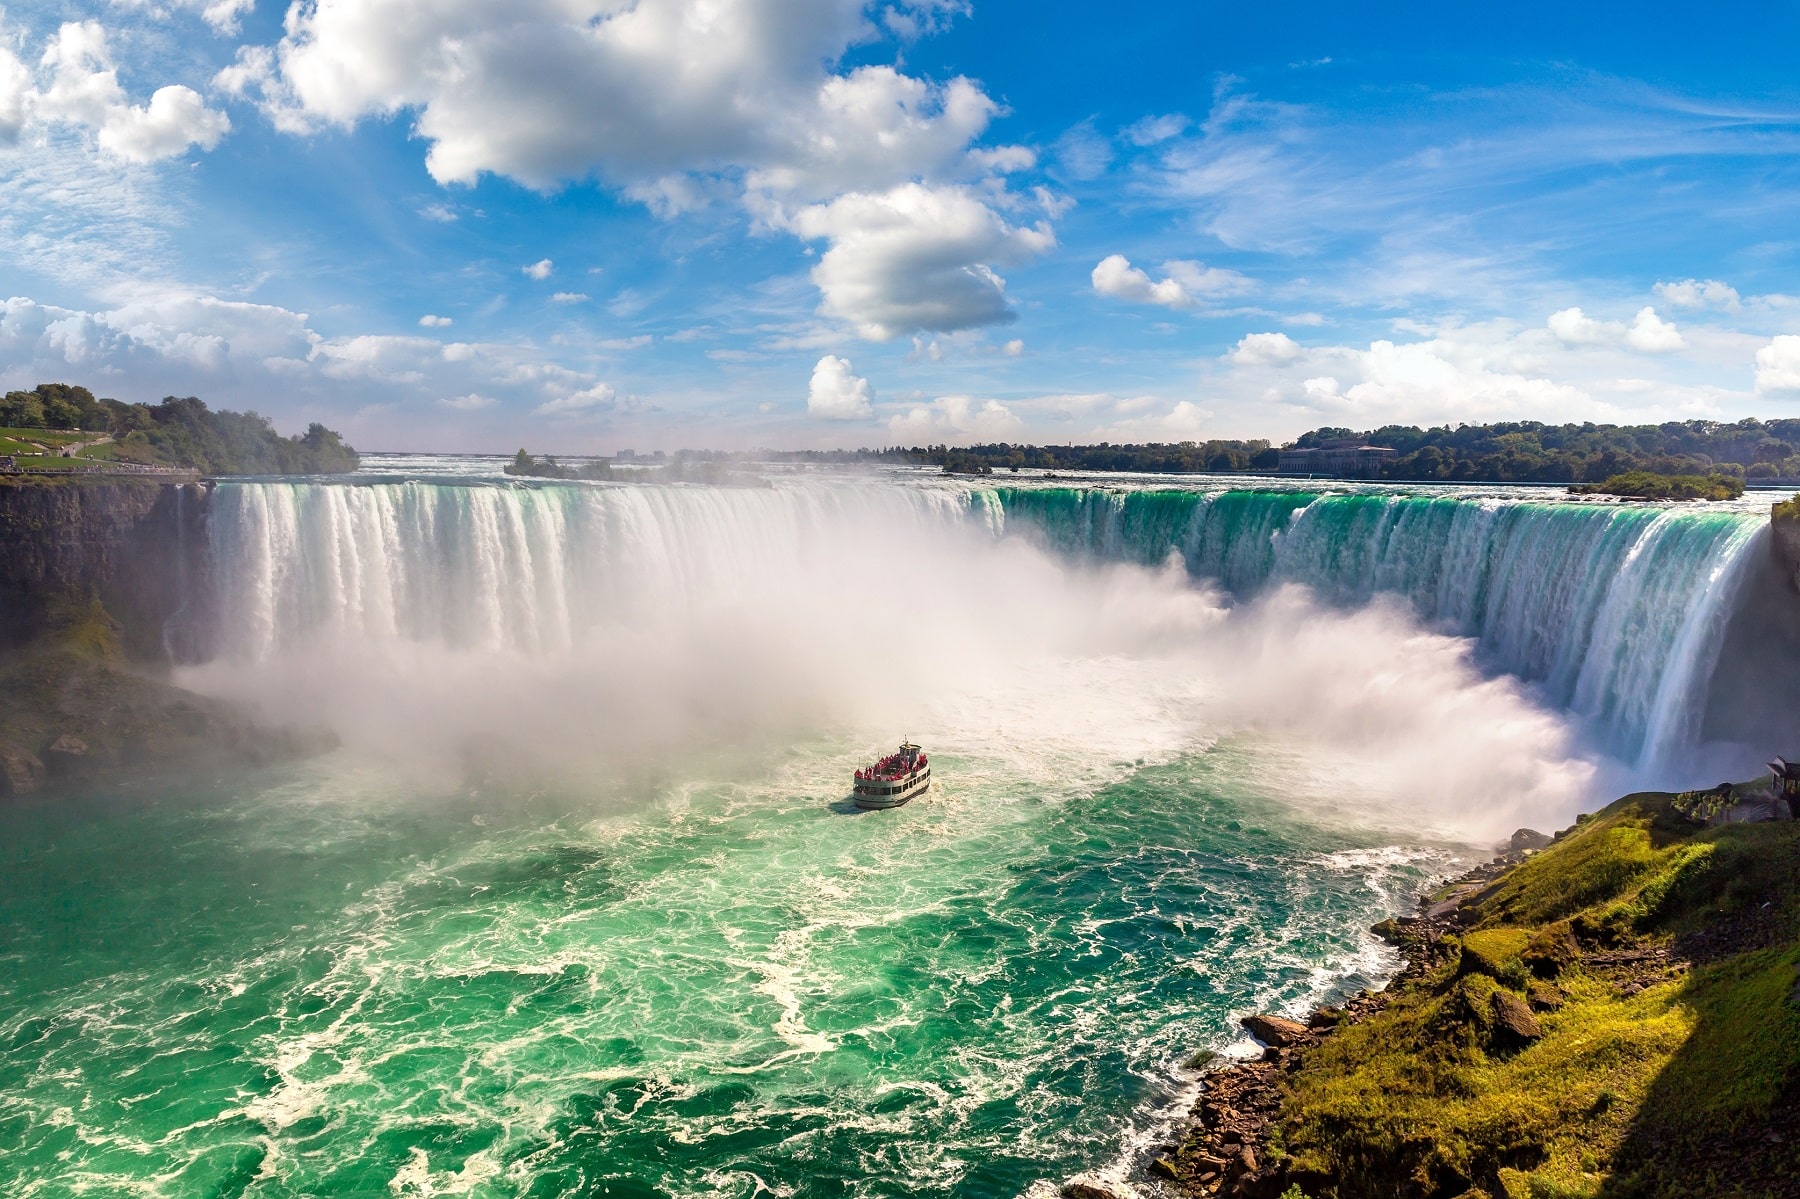 Get up close to nature, wildlife, and the awe-inspiring Niagara Falls